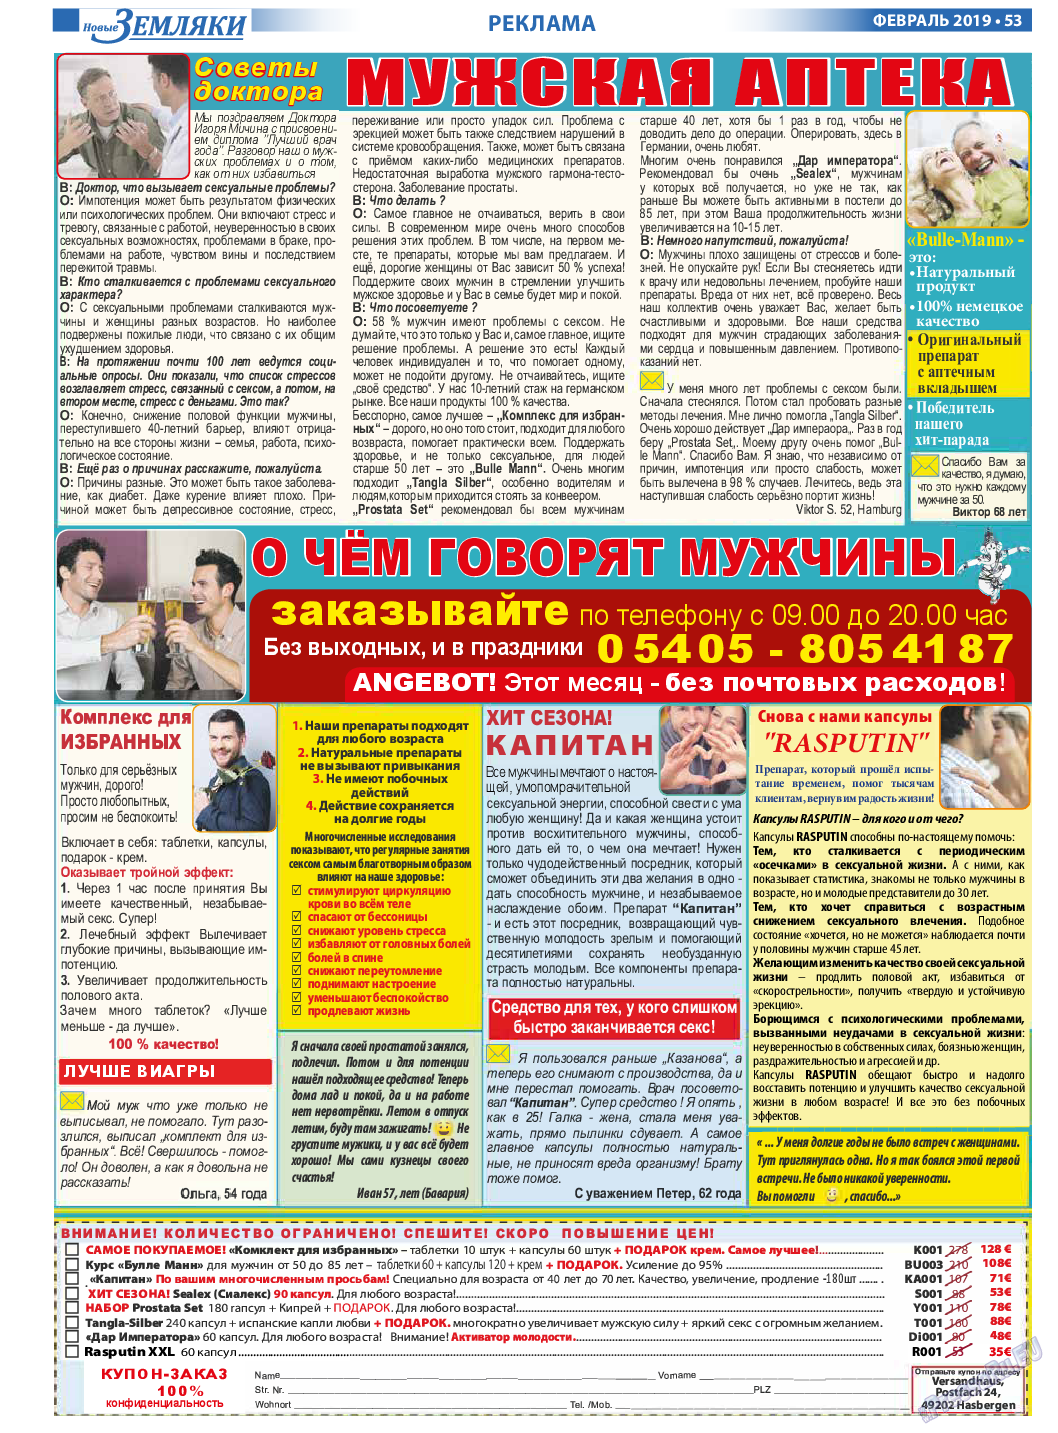 Новые Земляки, газета. 2019 №2 стр.53